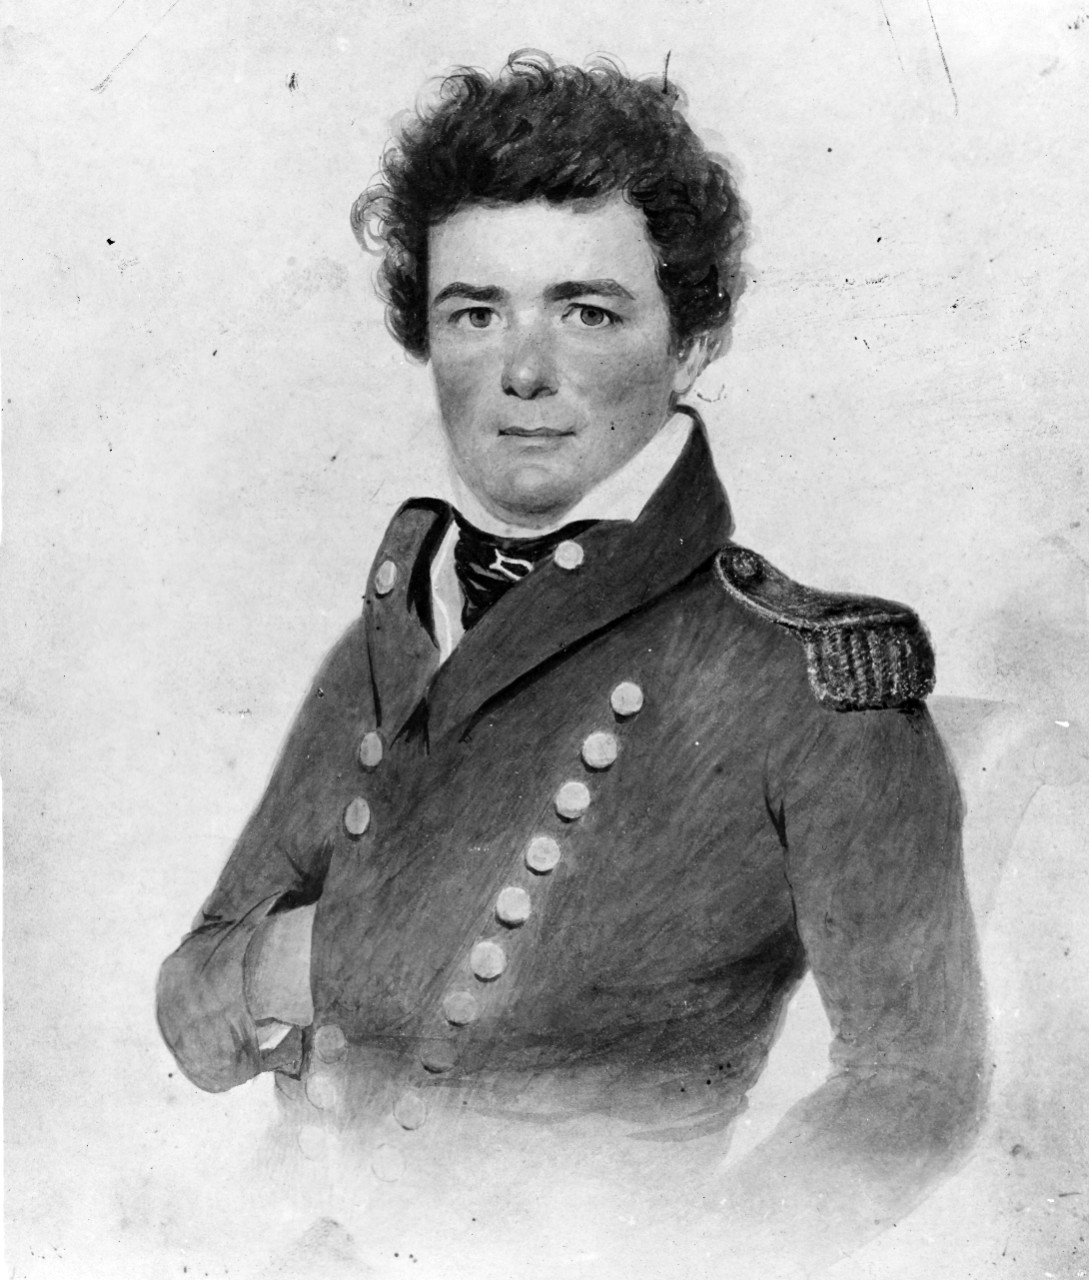 Midshipman James Lawrence, USN